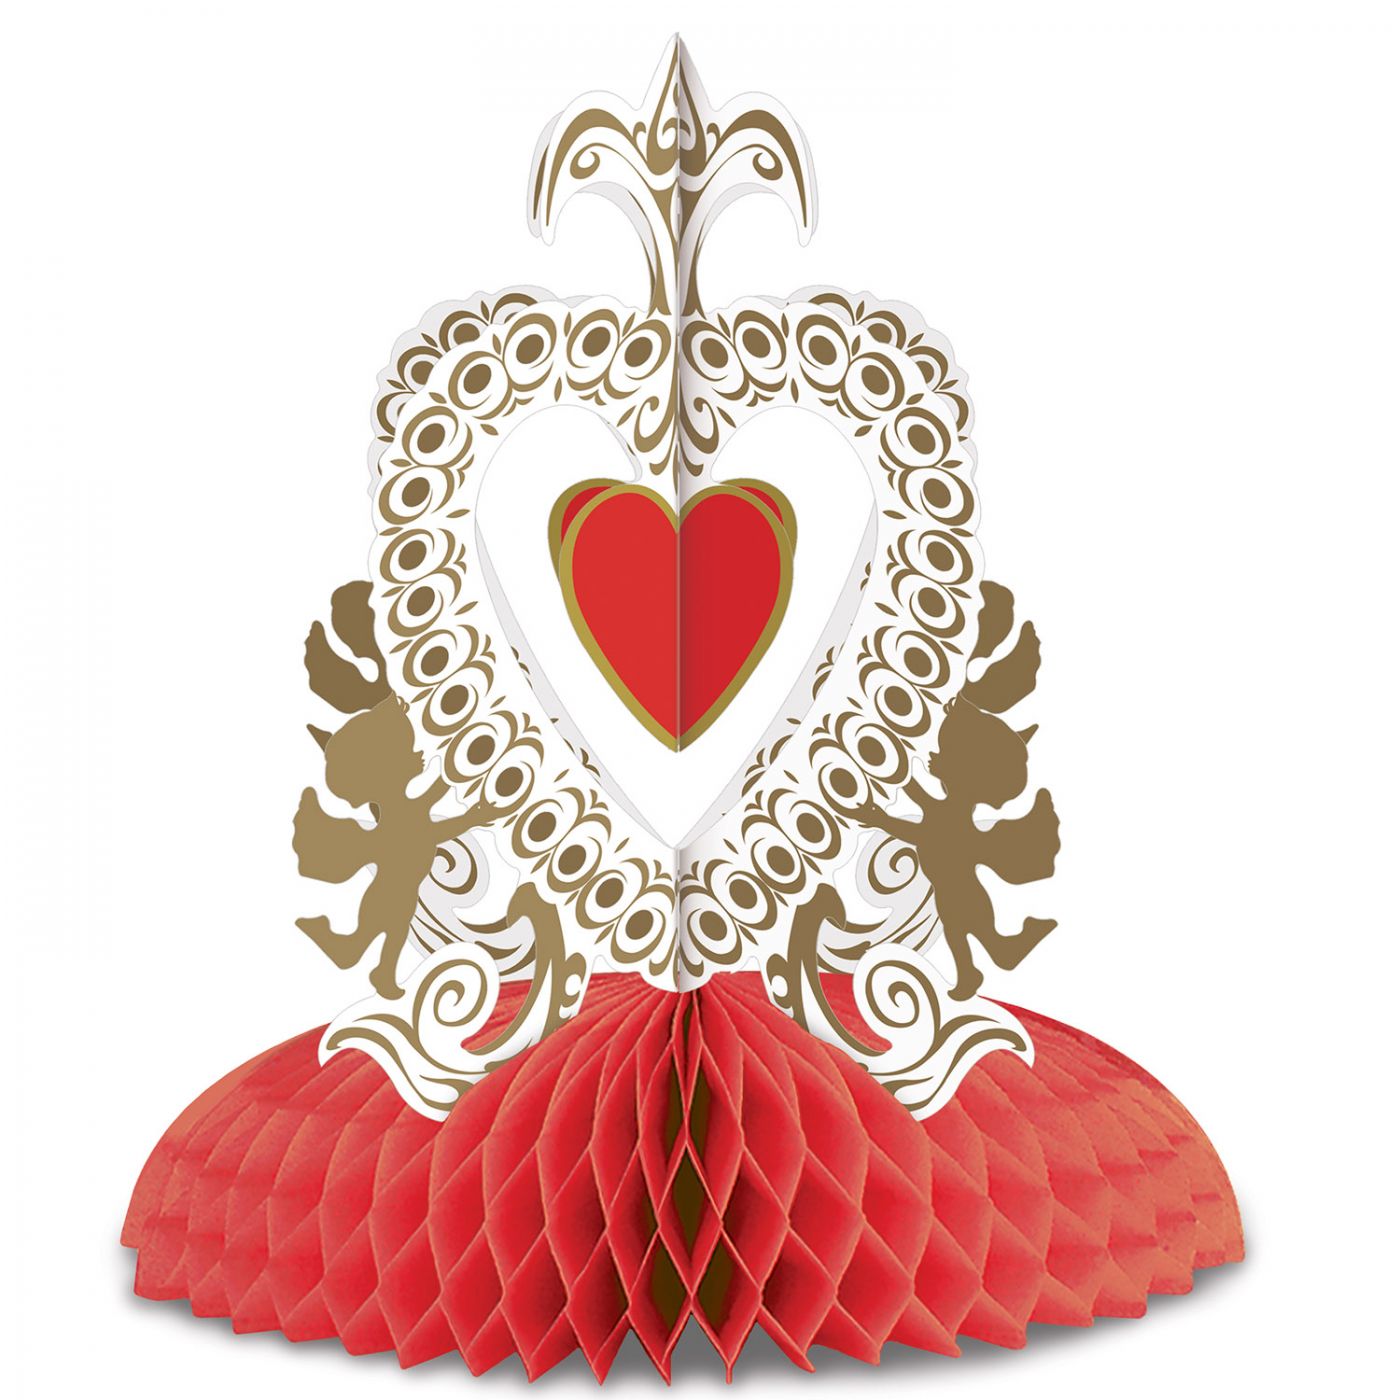 Vintage Valentine Cupid's Heart Ctrpc image